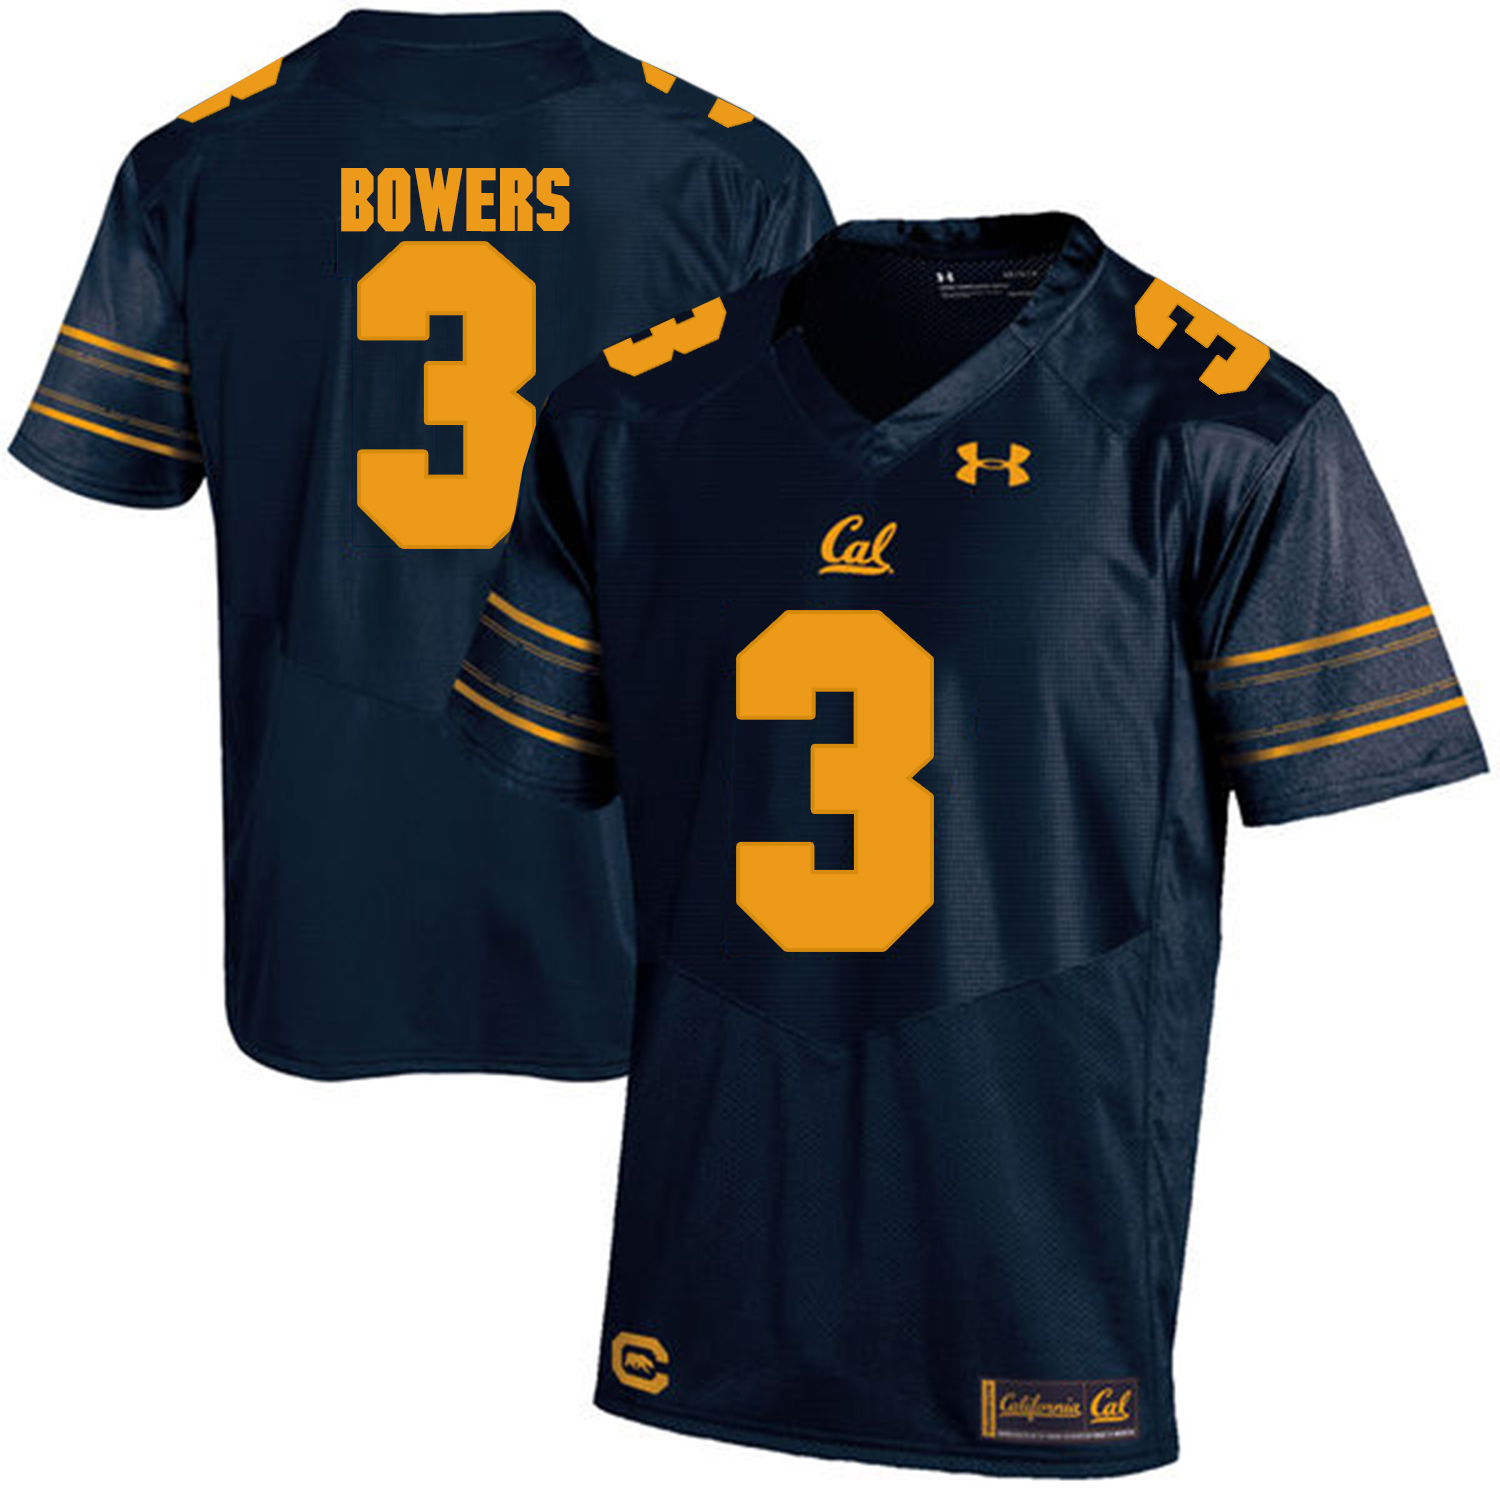 California Golden Bears 3 Ross Bowers Navy College Football Jersey